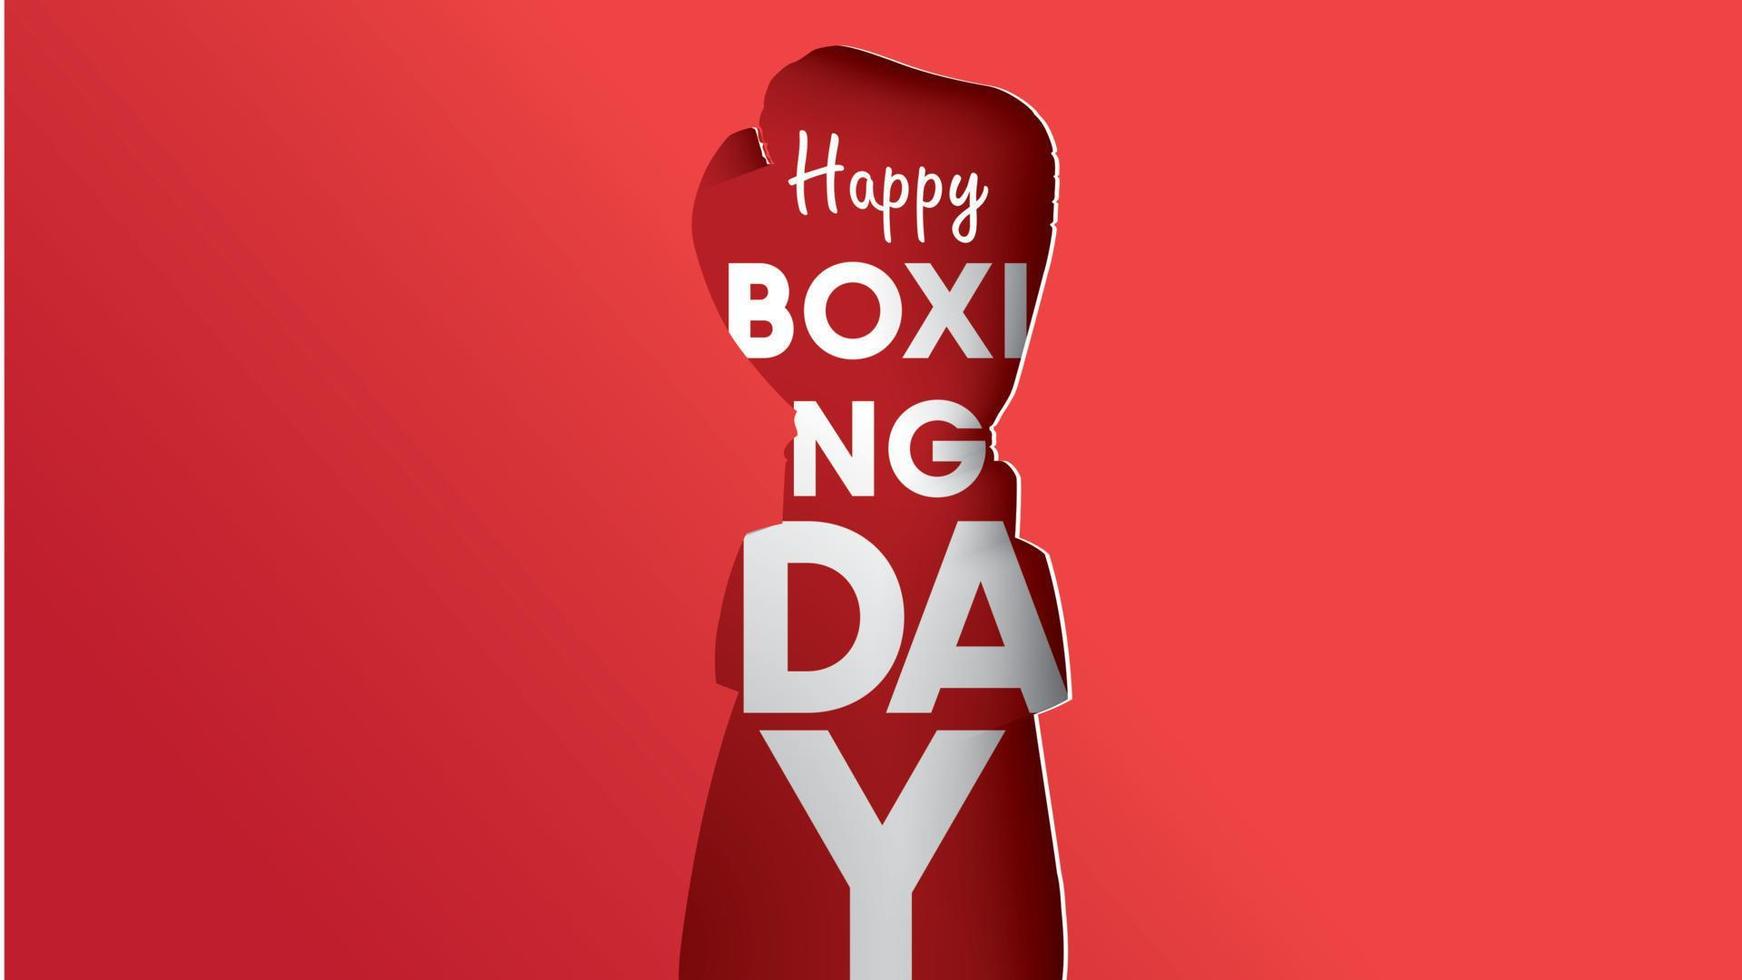 boxing day vector illustration.typography combiné en forme de gants de boxe avec papier art et style artisanal